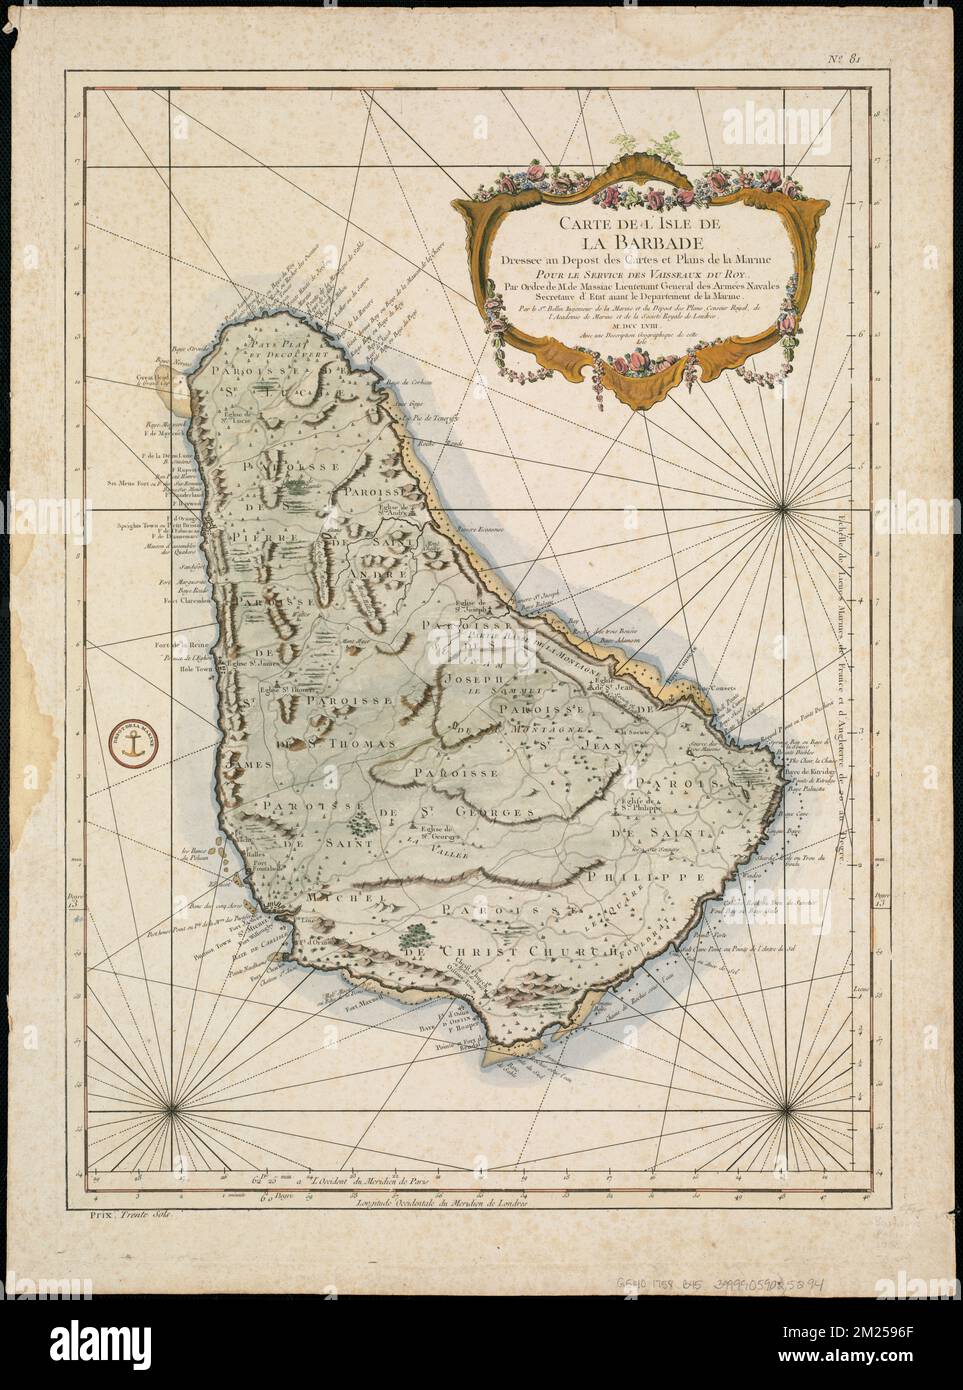 Carte de l'Isle de La Barbade : avec une description geographique de cette isle , Barbados, Maps, Early works to 1800 Norman B. Leventhal Map Center Collection Stock Photo